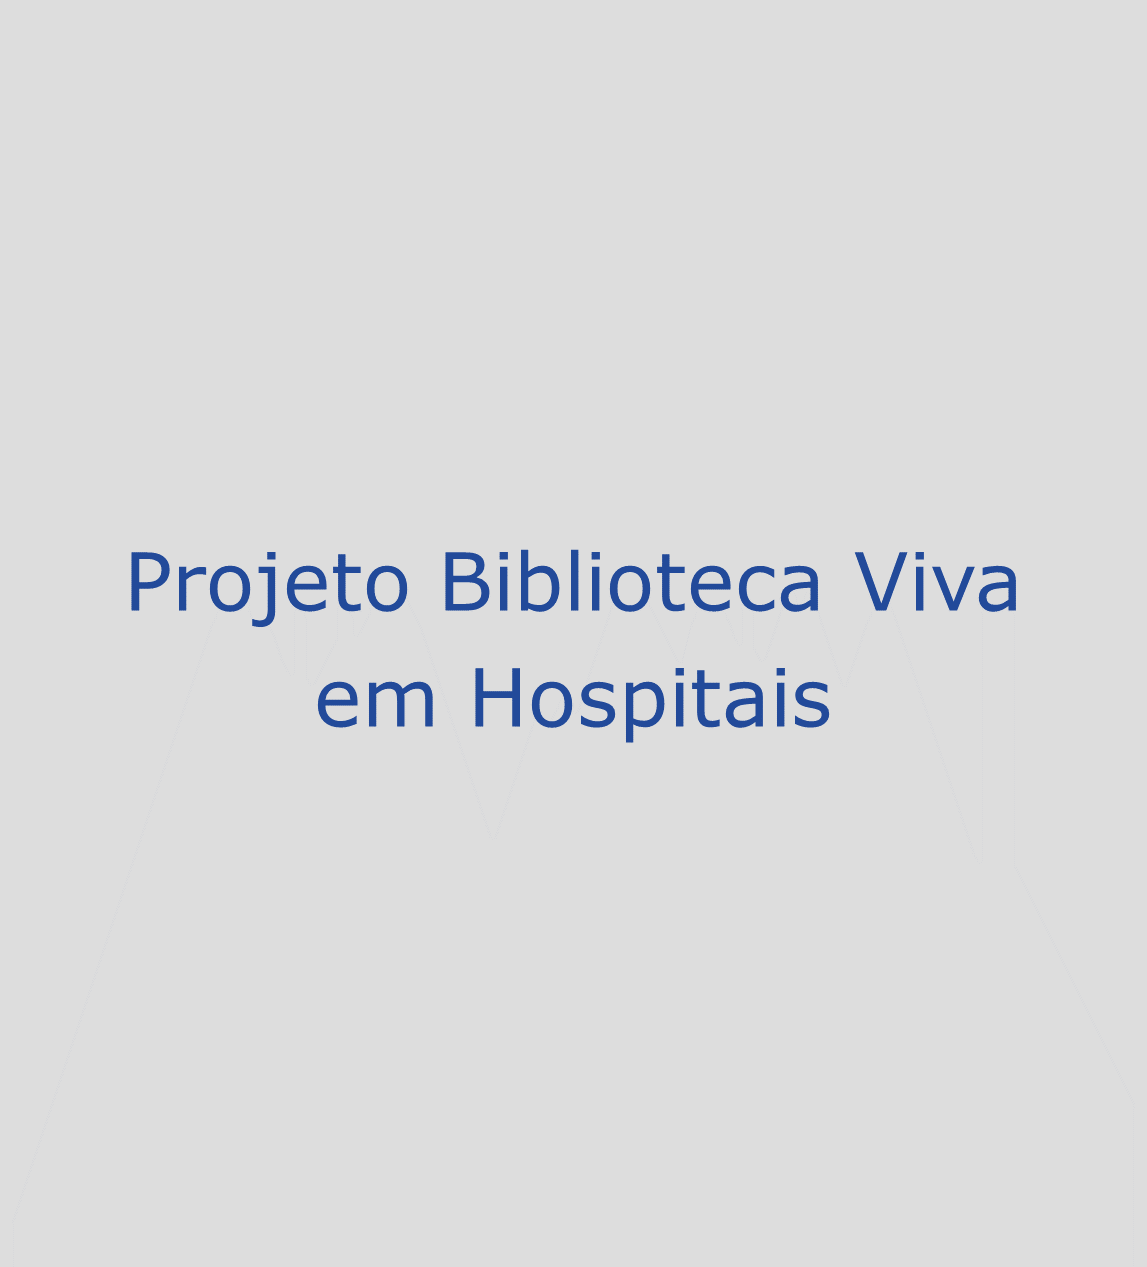 Projeto Biblioteca Viva em Hospitais